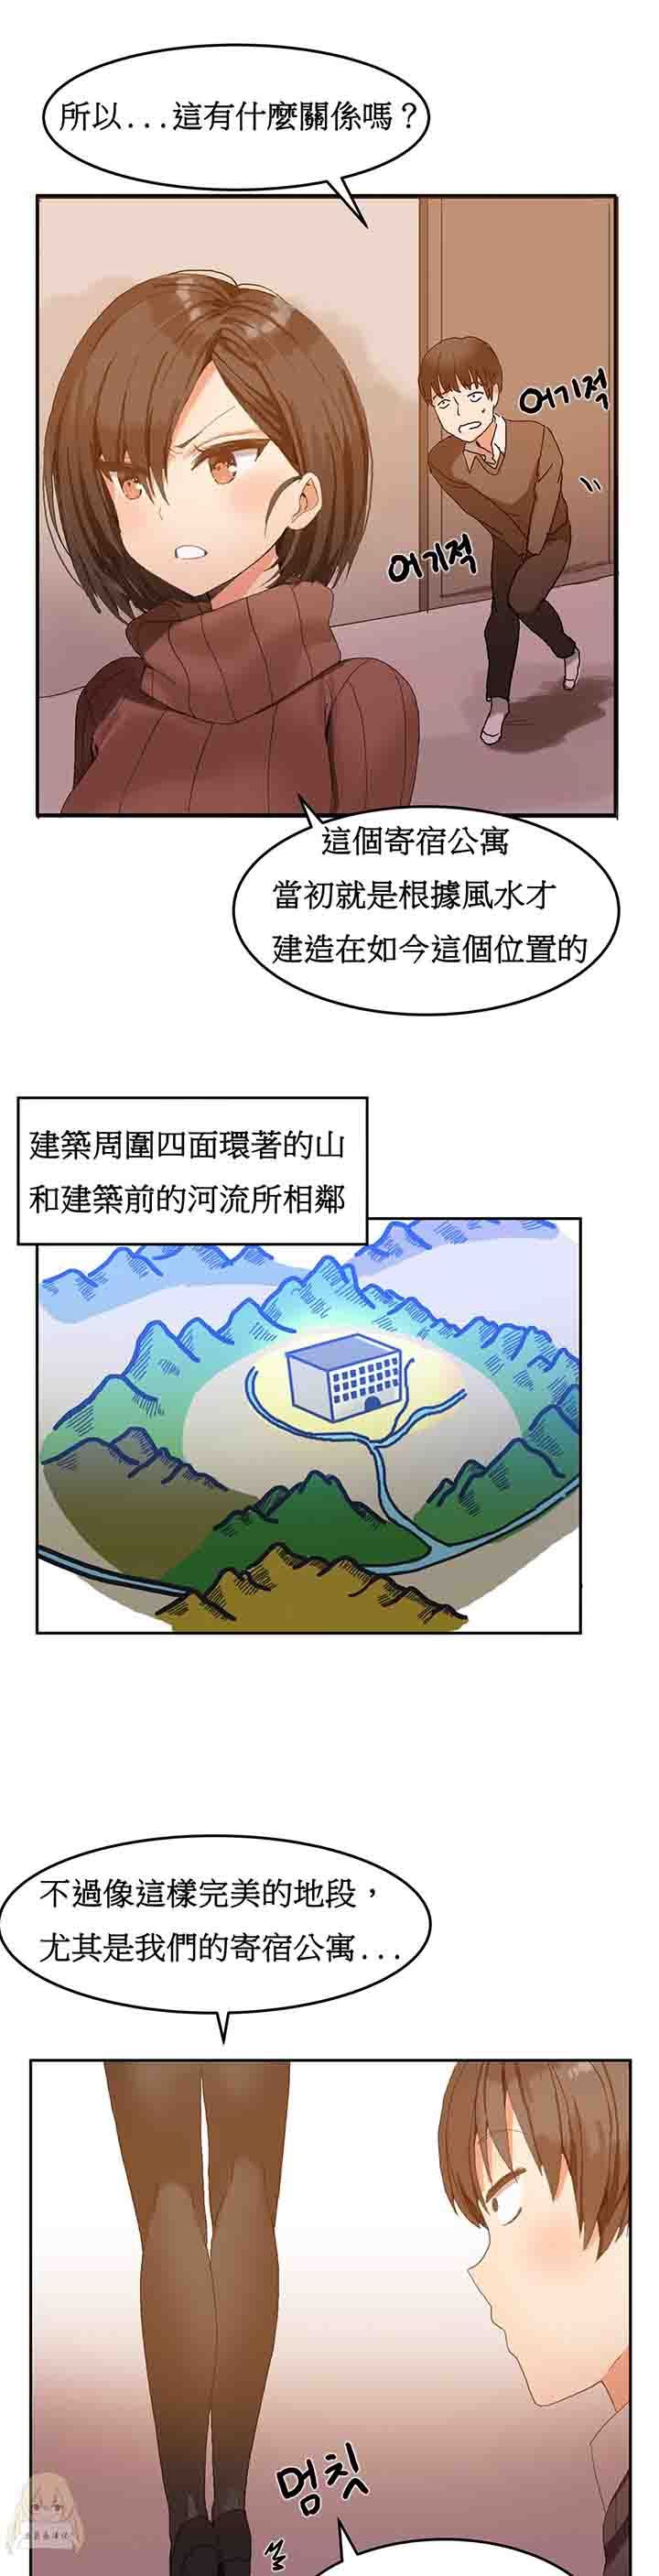 韩国污漫画 寄宿公寓-陰氣之洞 第2话 7